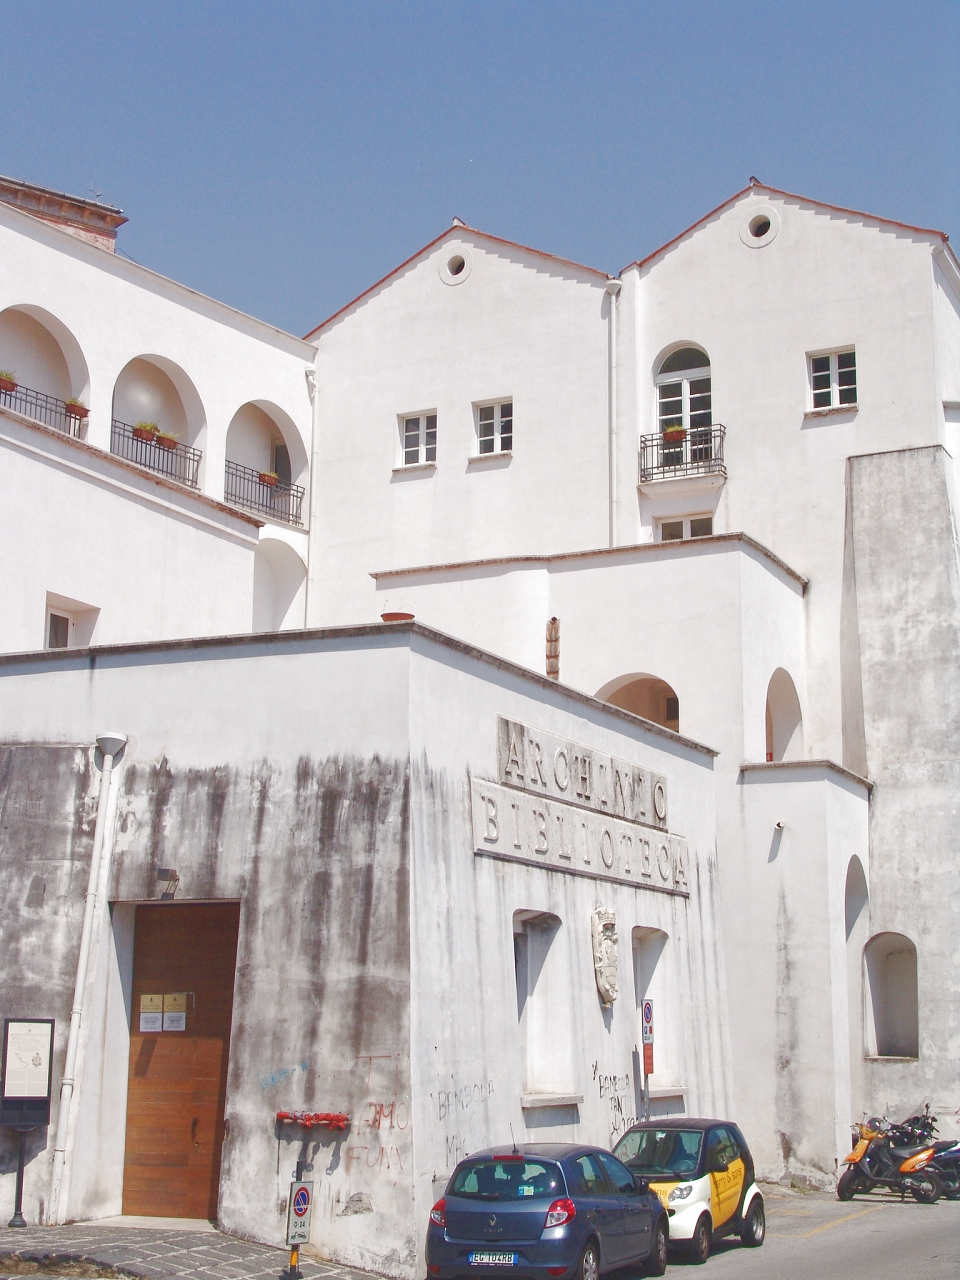 Convento di San Lorenzo al Monte (convento) - Salerno (SA) 